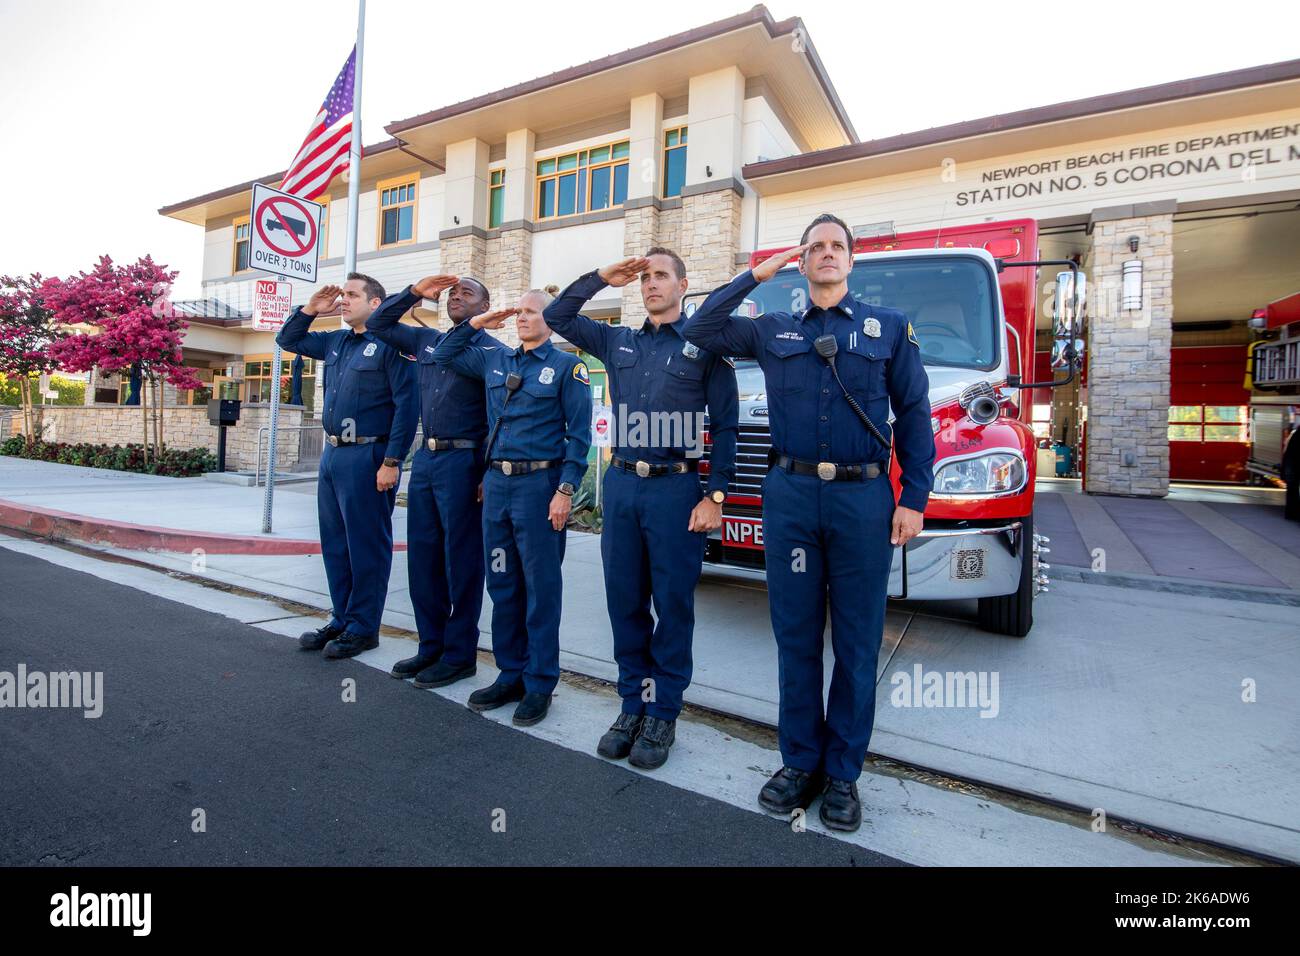 Am 20.. Jahrestag von 9/11 grüßen Feuerwehrleute in Newport Beach, CA, während sie eine Sendung der Orange County Fire Authority in rem hören Stockfoto